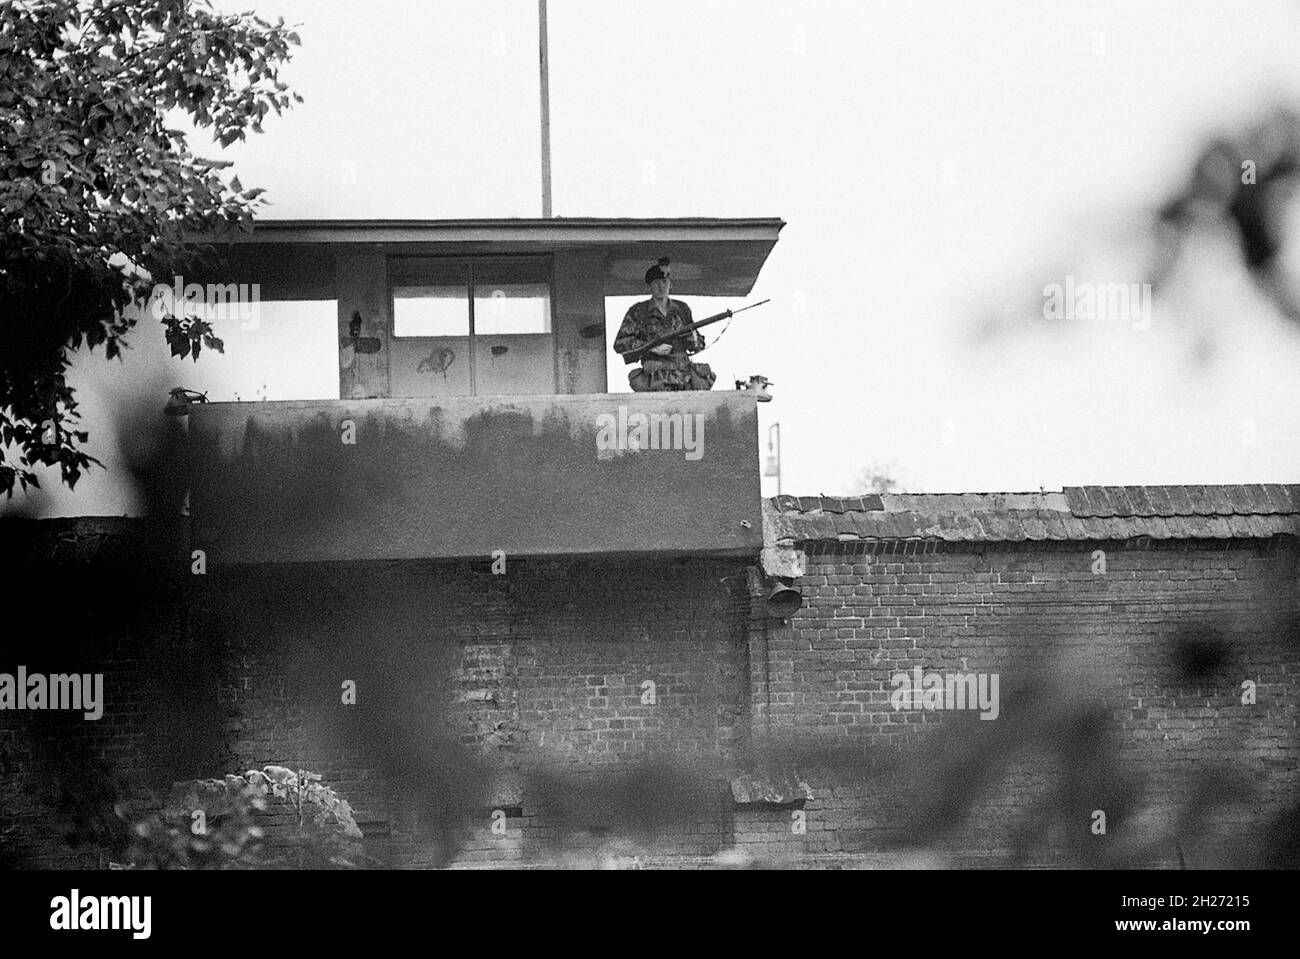 PRIGIONE DI SPANDAU Berlino Ovest Germania detenuta dopo la guerra sette leader nazisti condannati in processi di Nüremberg demoliti 1987 dopo la morte dell'ultima prigione di Rudolf Hess Foto Stock